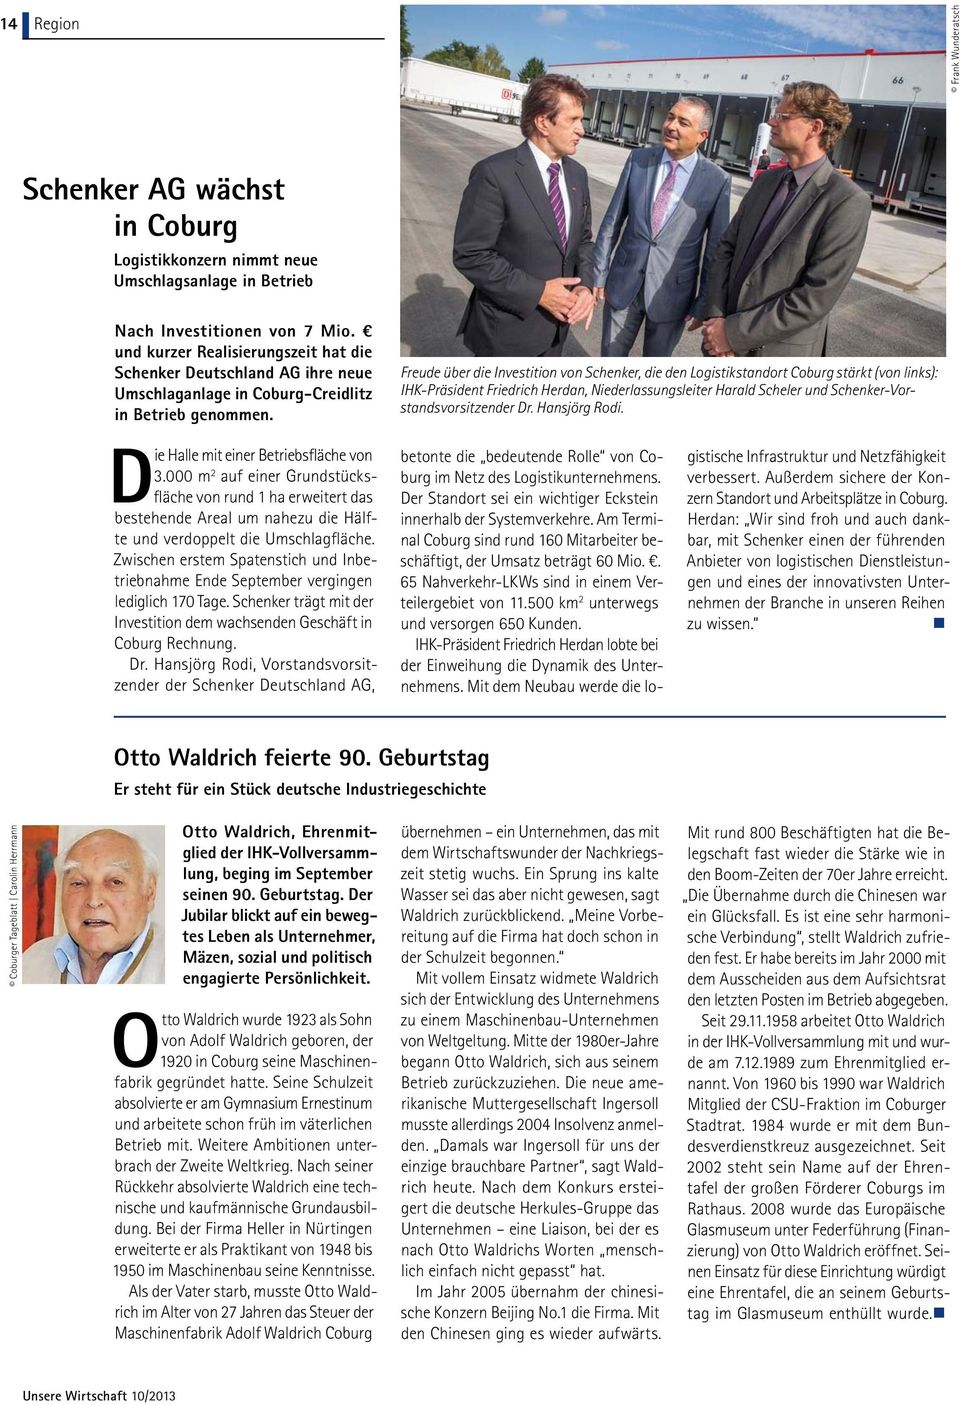 Freude über die Investition von Schenker, die den Logistikstandort Coburg stärkt (von links): IHK-Präsident Friedrich Herdan, Niederlassungsleiter Harald Scheler und Schenker-Vorstandsvorsitzender Dr.